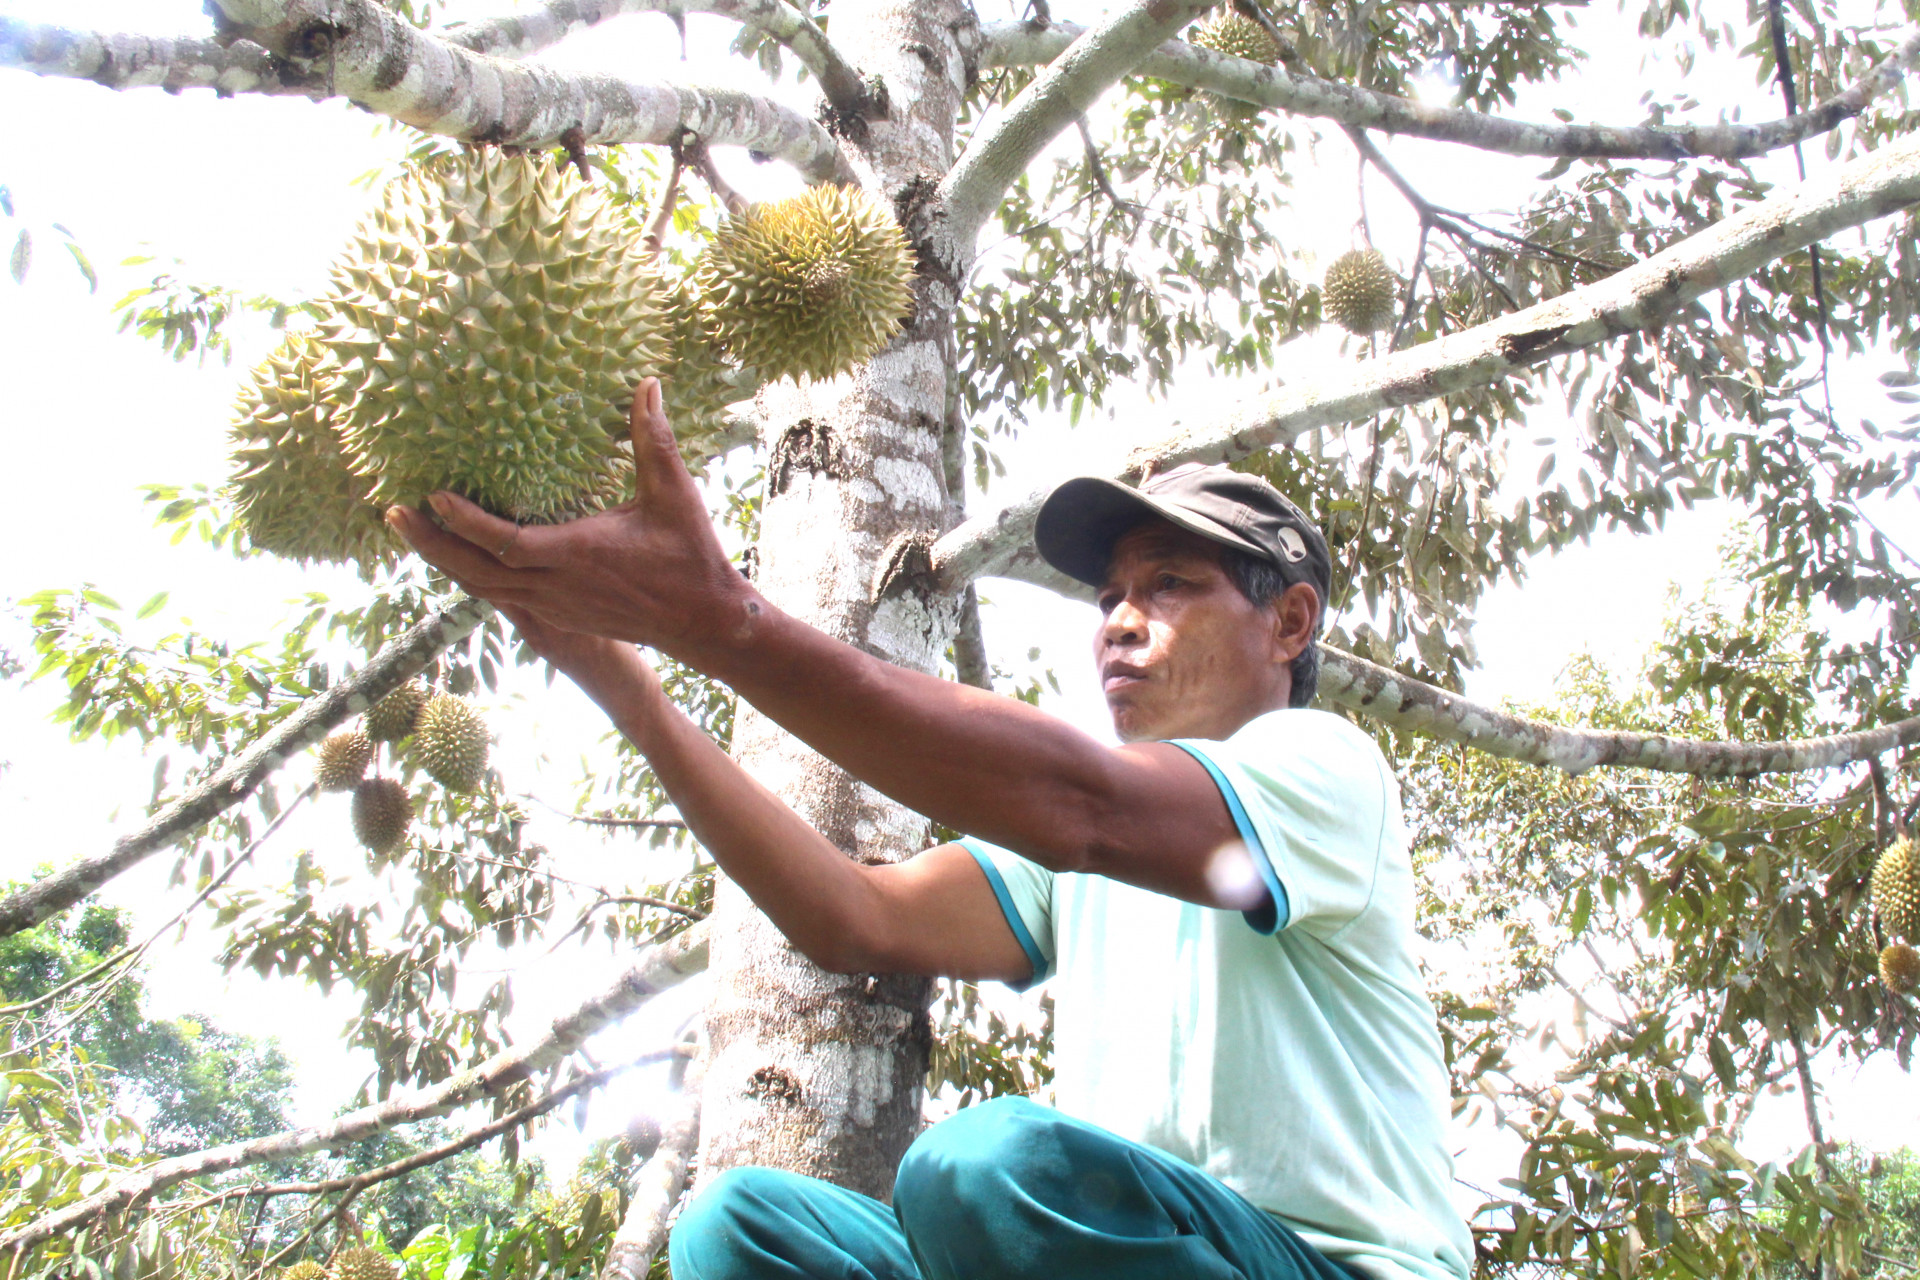 Đời sống của đồng bào dân tộc thiểu số Raglai ở Khánh Sơn ngày càng nâng cao nhờ trồng sầu riêng